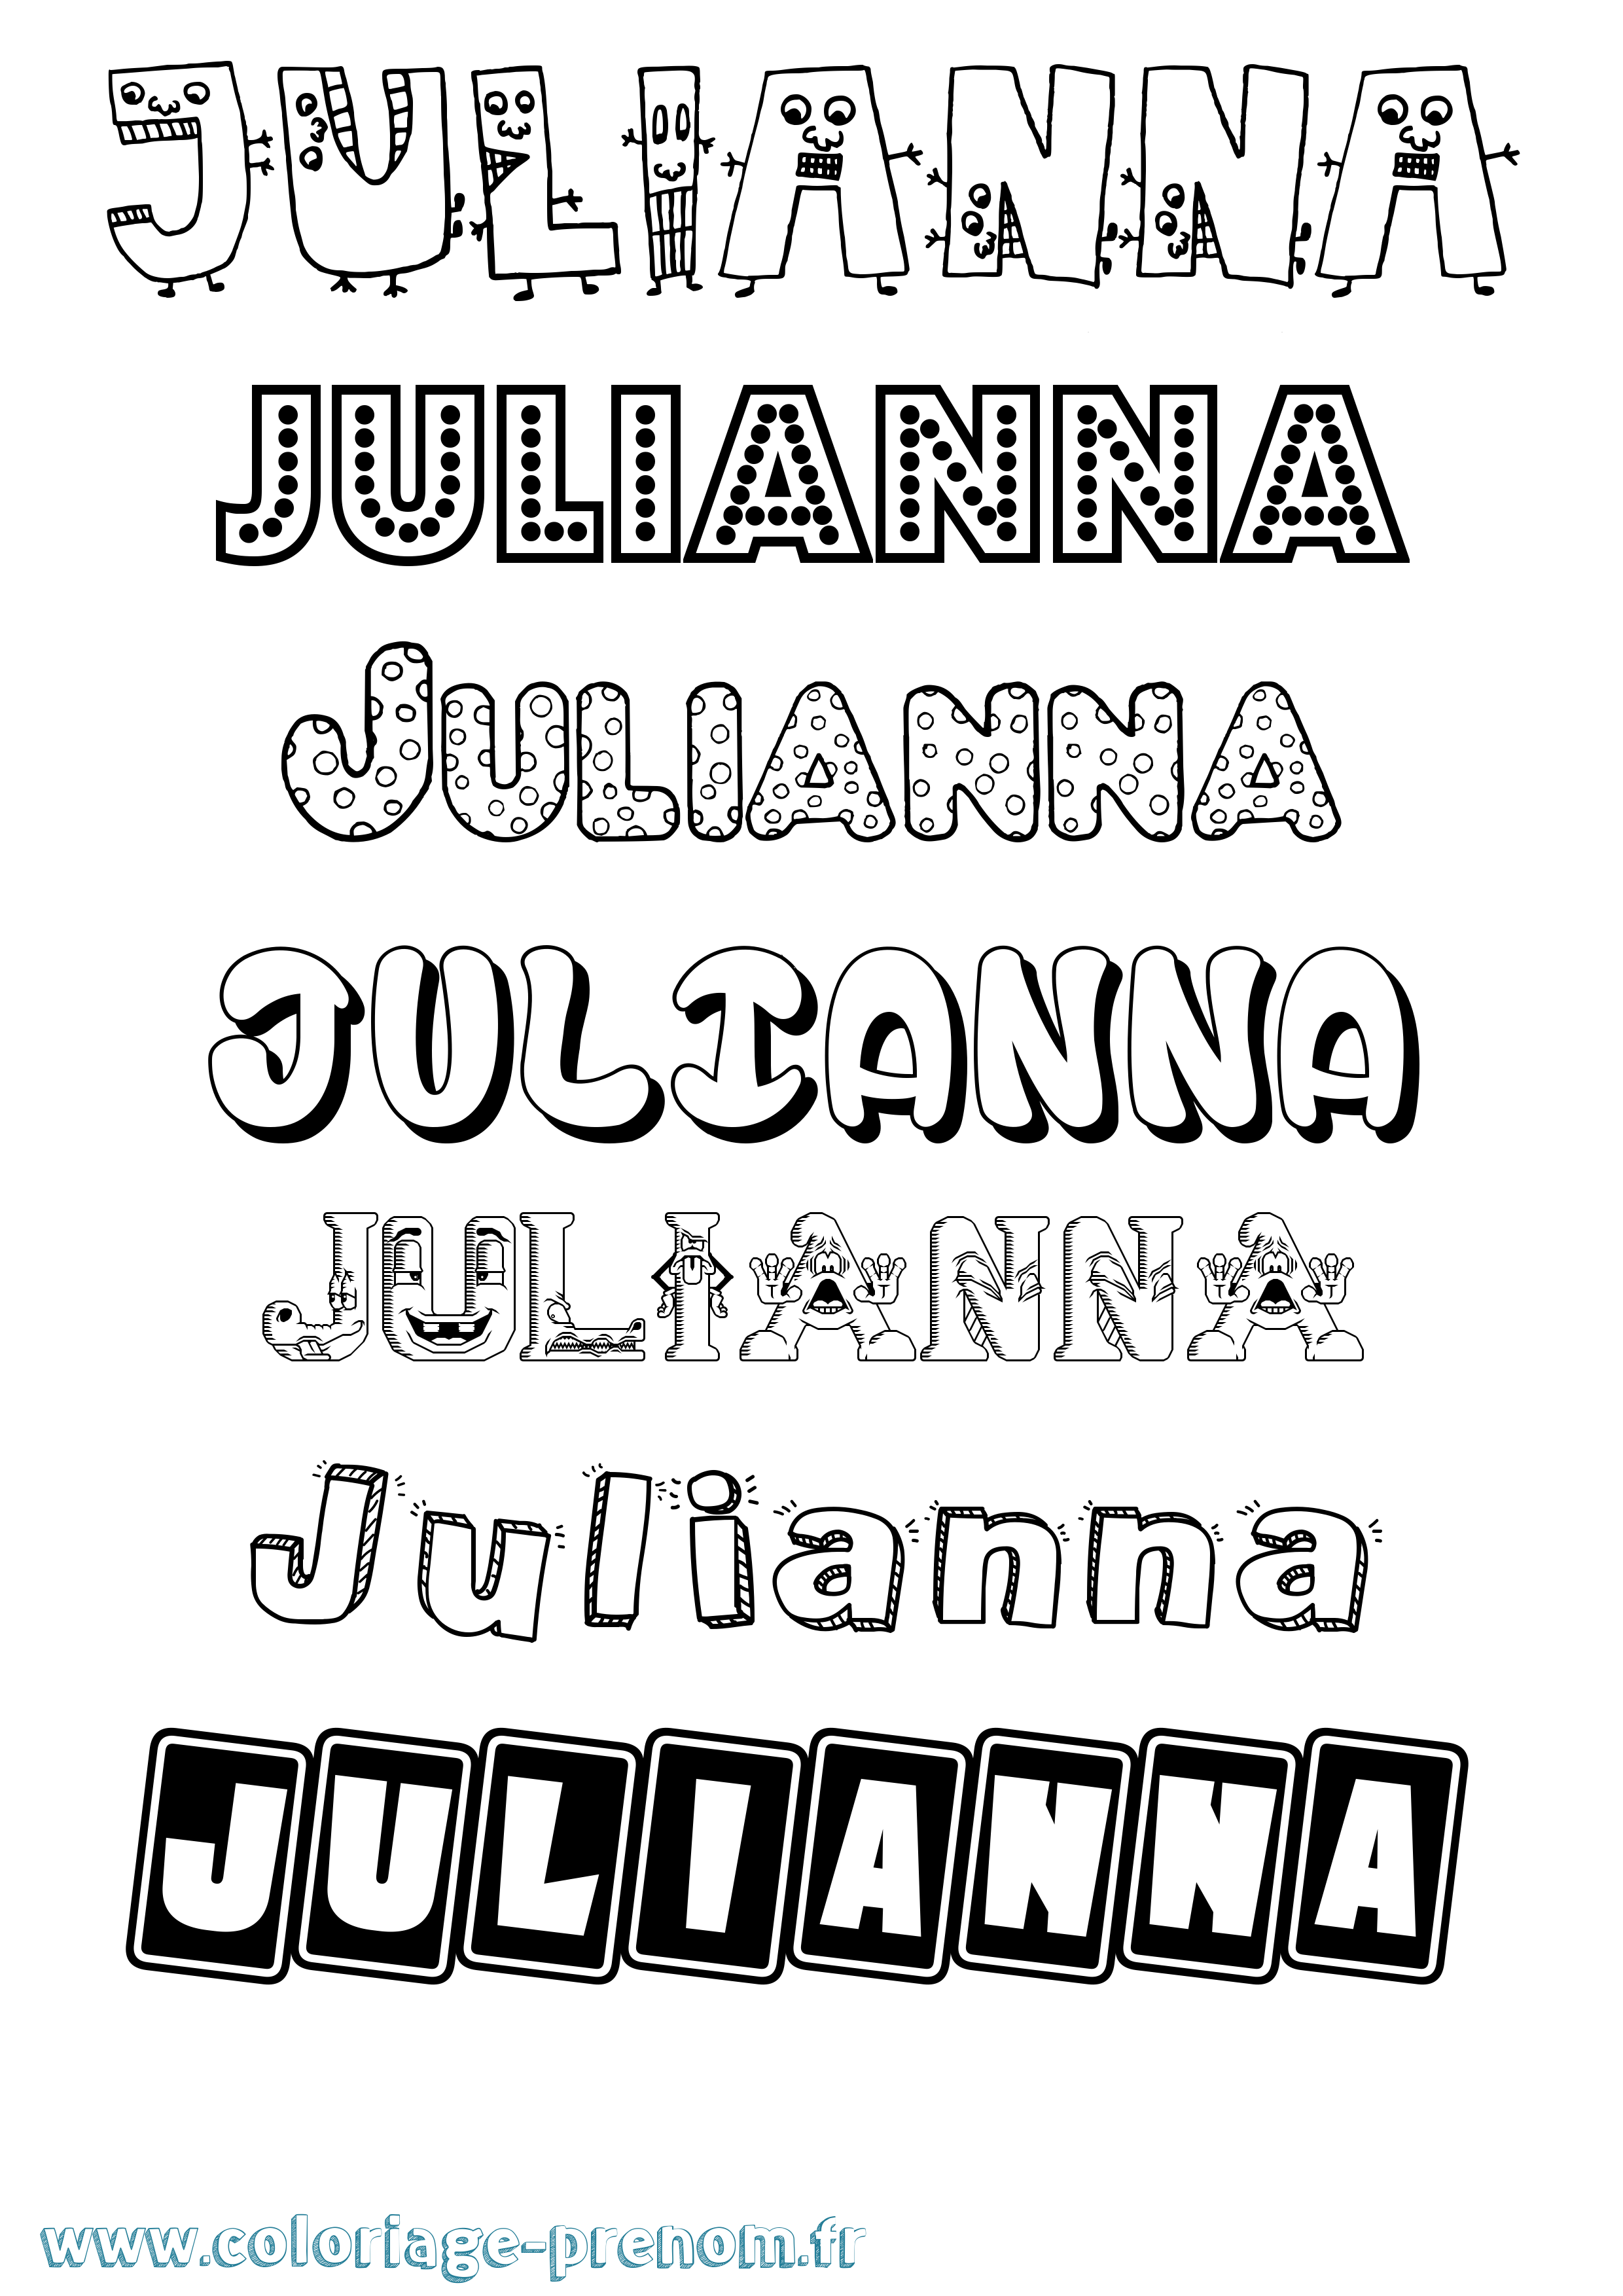 Coloriage prénom Julianna Fun